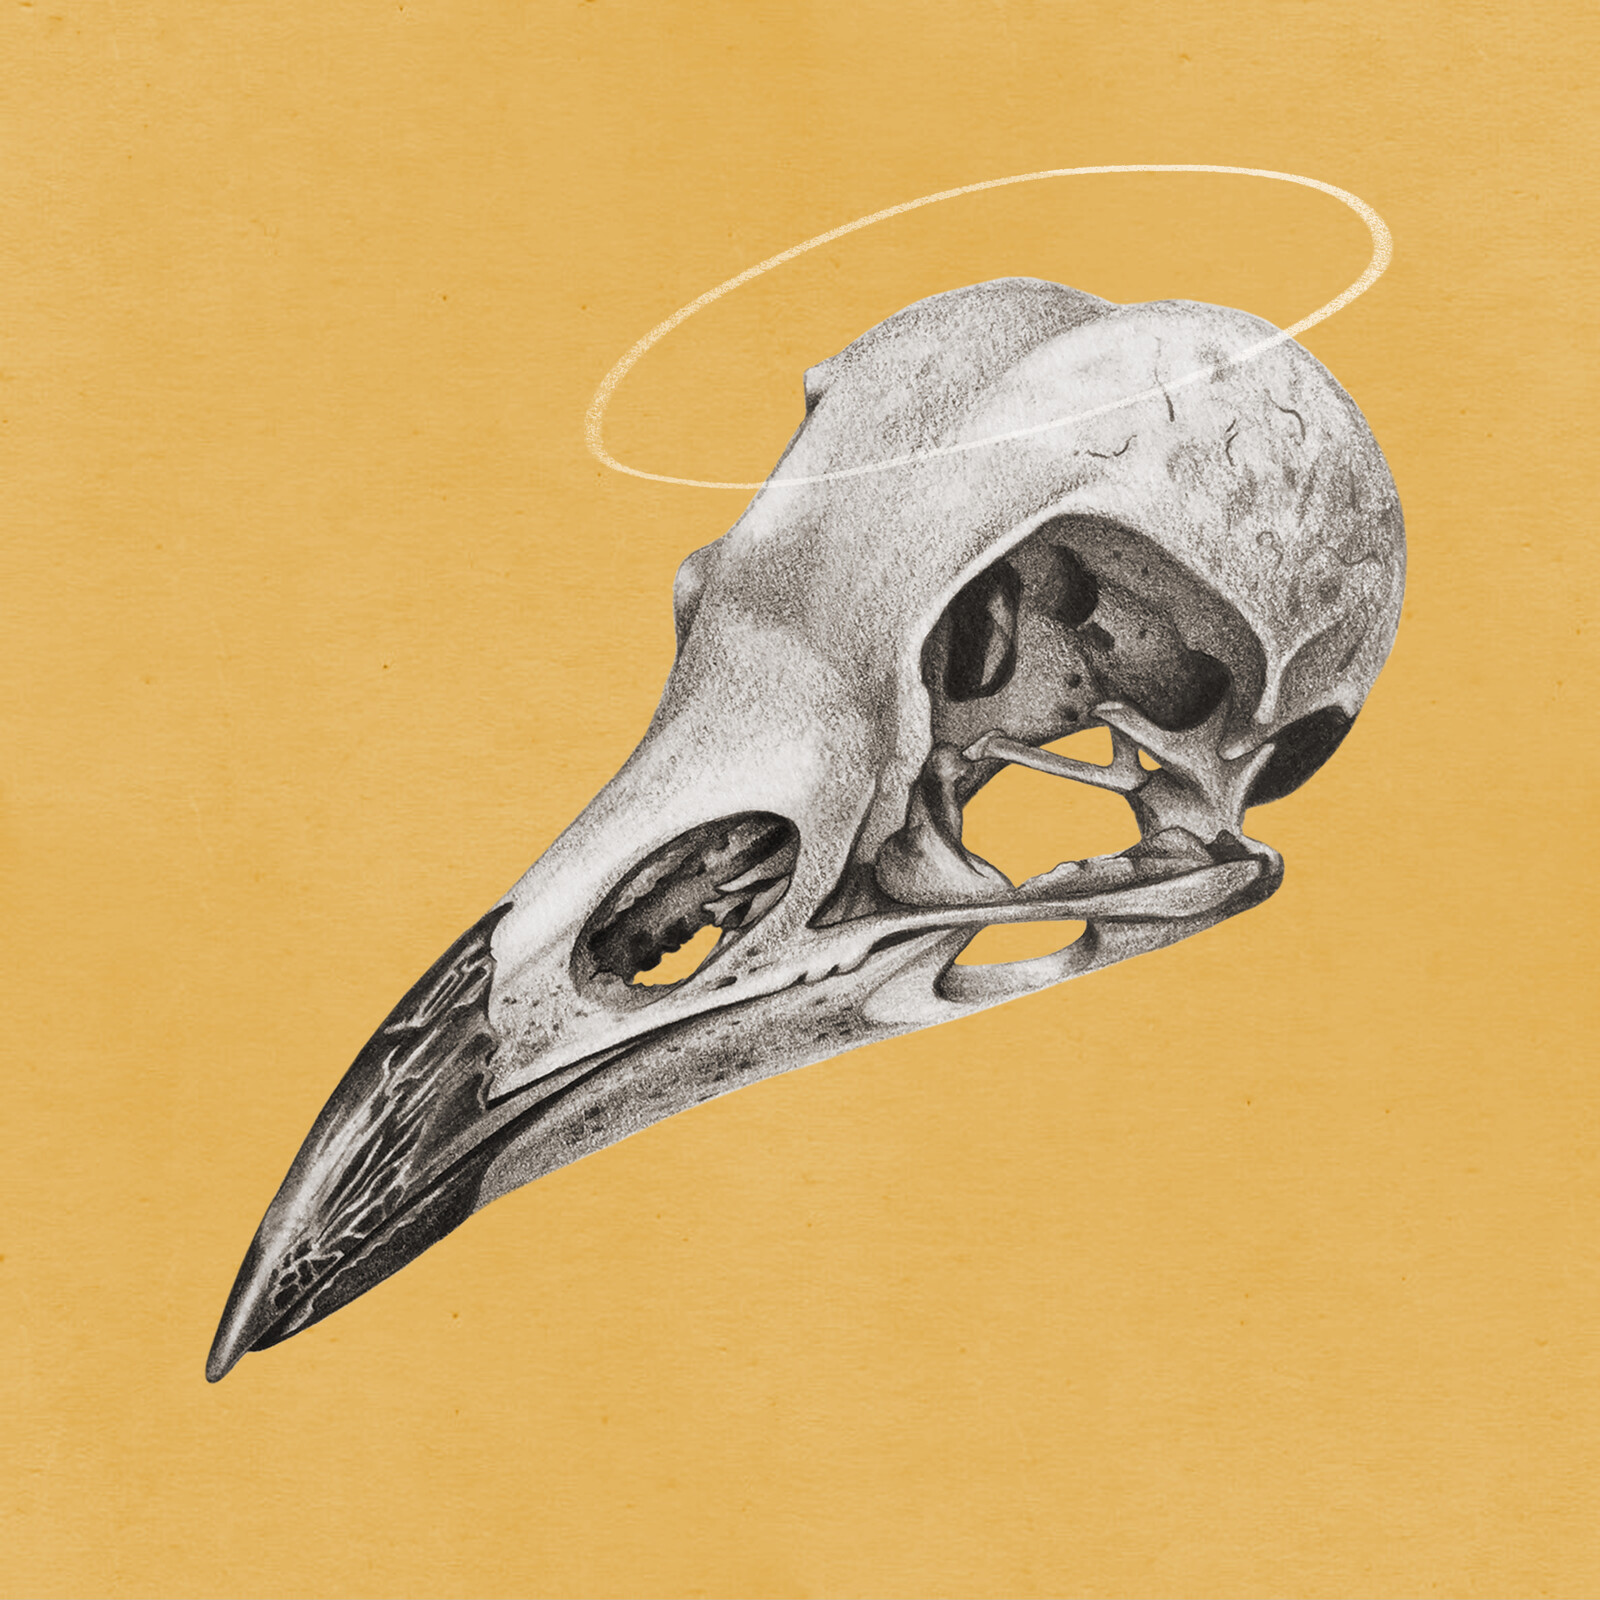 Bird Skull by John Hobbs on Dribbble